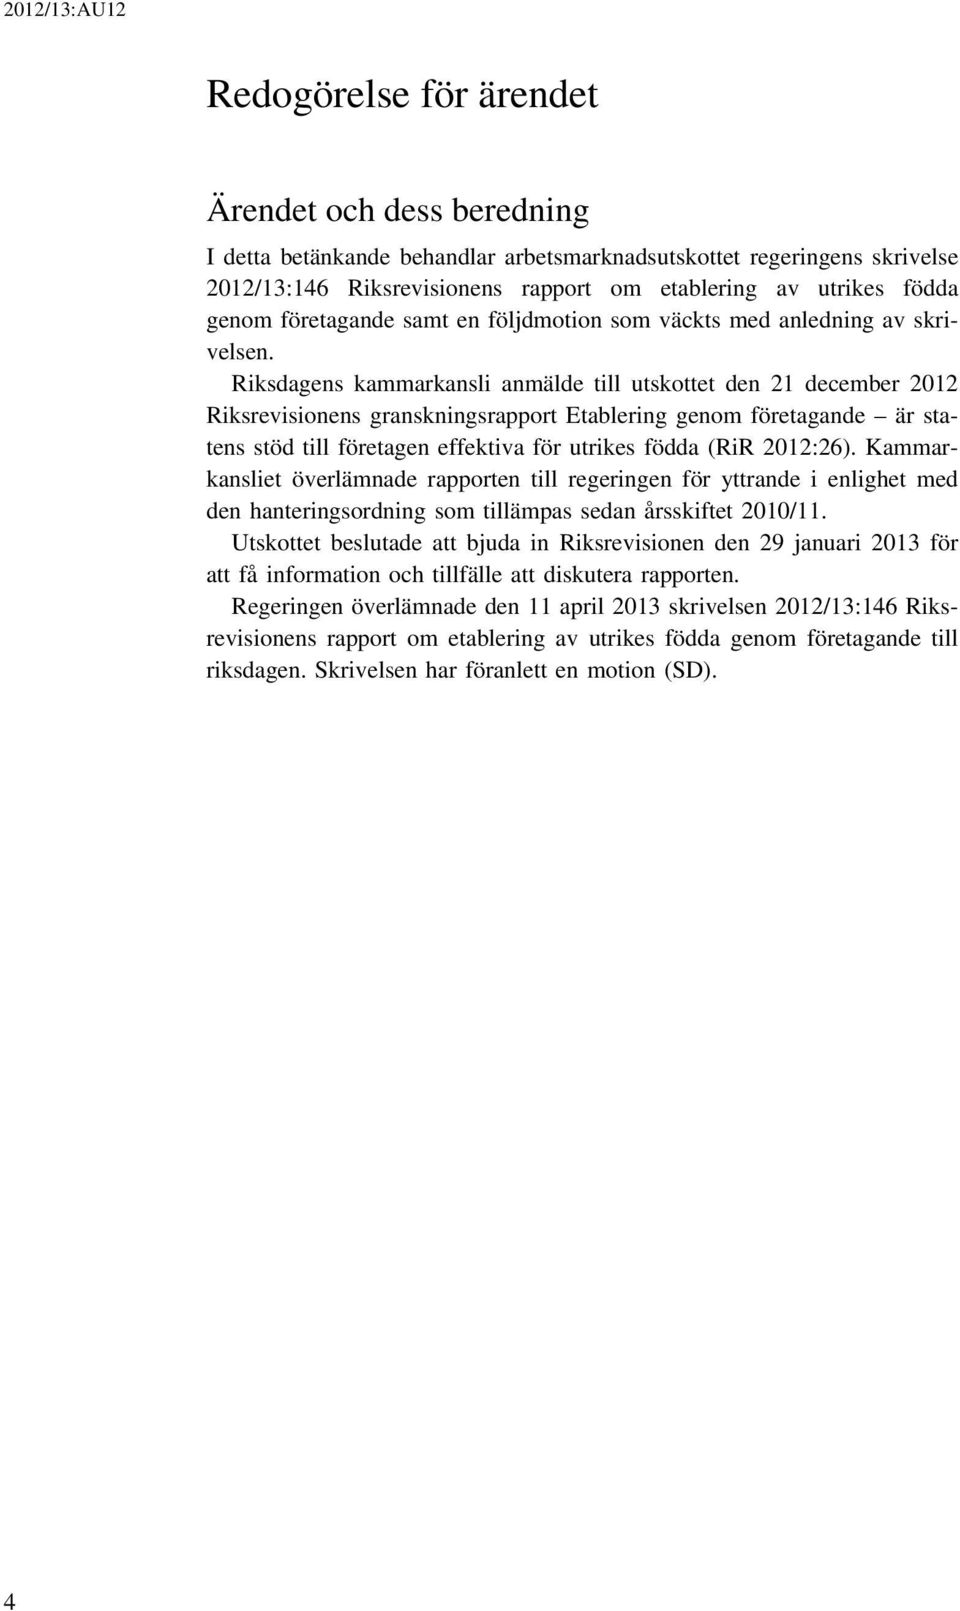 Riksdagens kammarkansli anmälde till utskottet den 21 december 2012 Riksrevisionens granskningsrapport Etablering genom företagande är statens stöd till företagen effektiva för utrikes födda (RiR